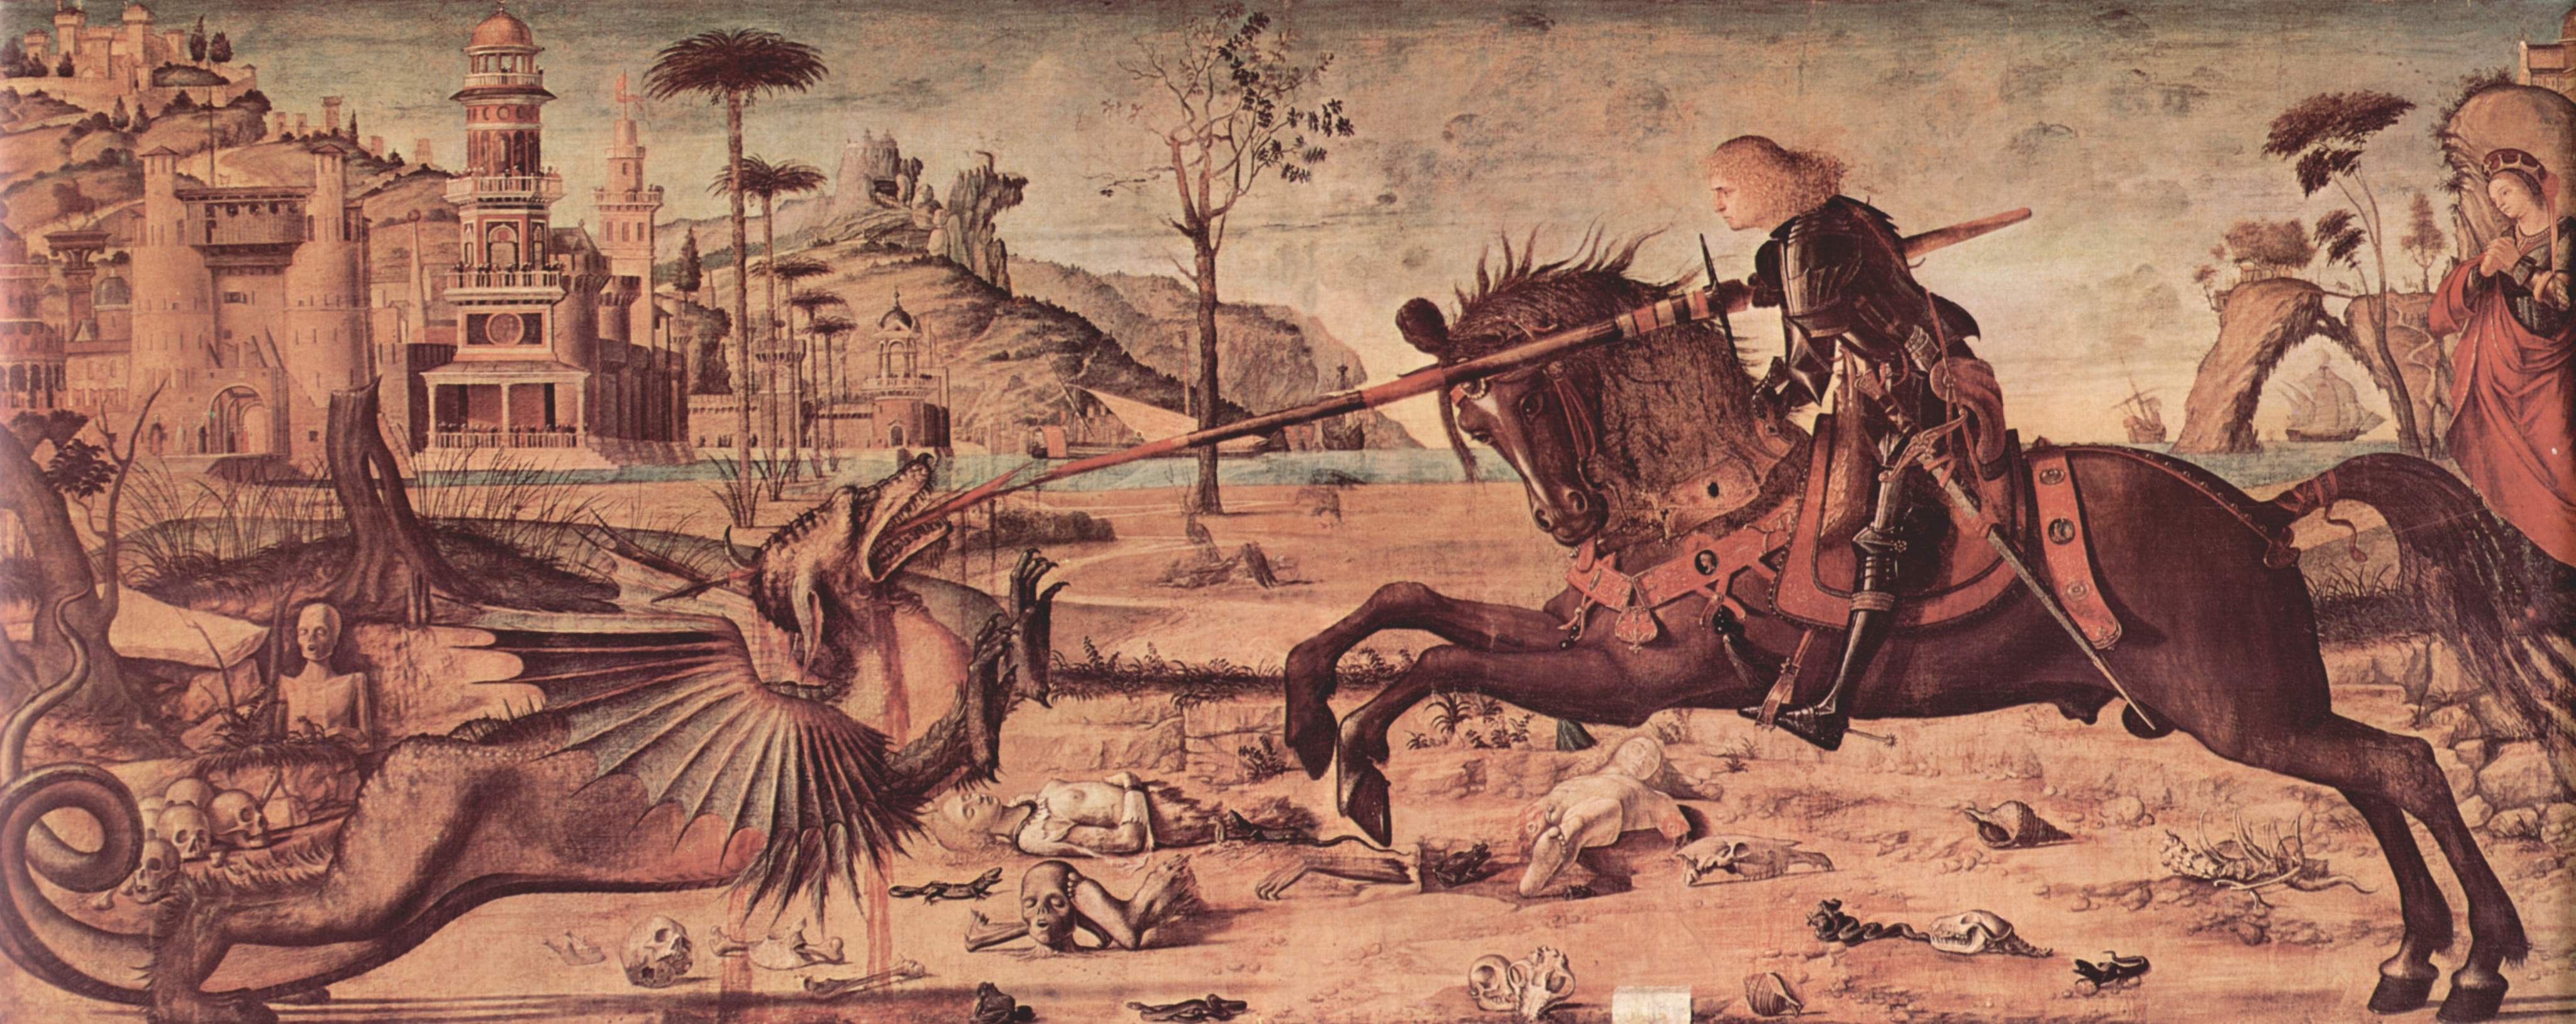 Św. Grzegorz i Smok by Vittore Carpaccio - 1502 - 141 x 360 cm 